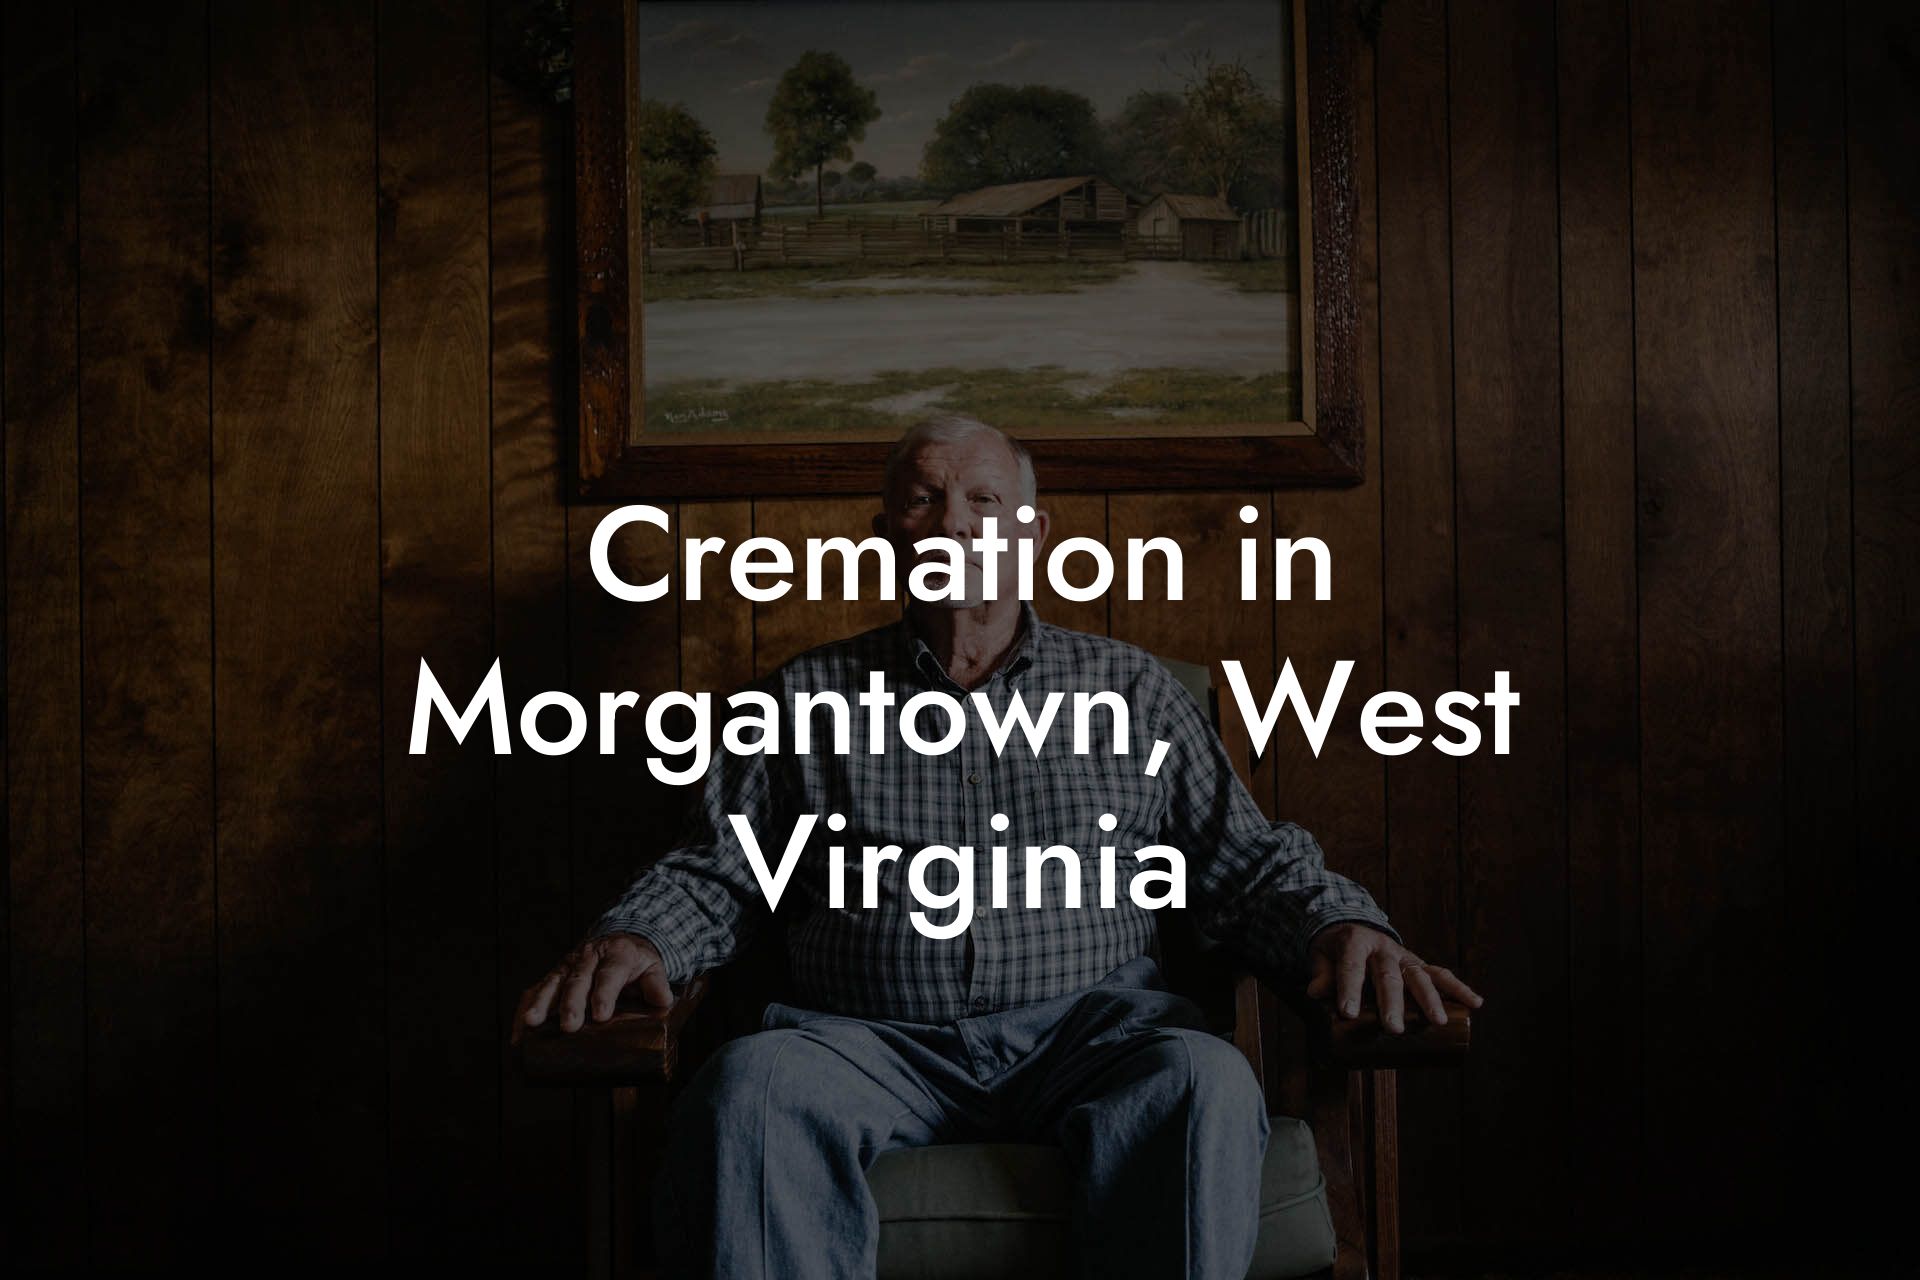 Cremation in Morgantown, West Virginia